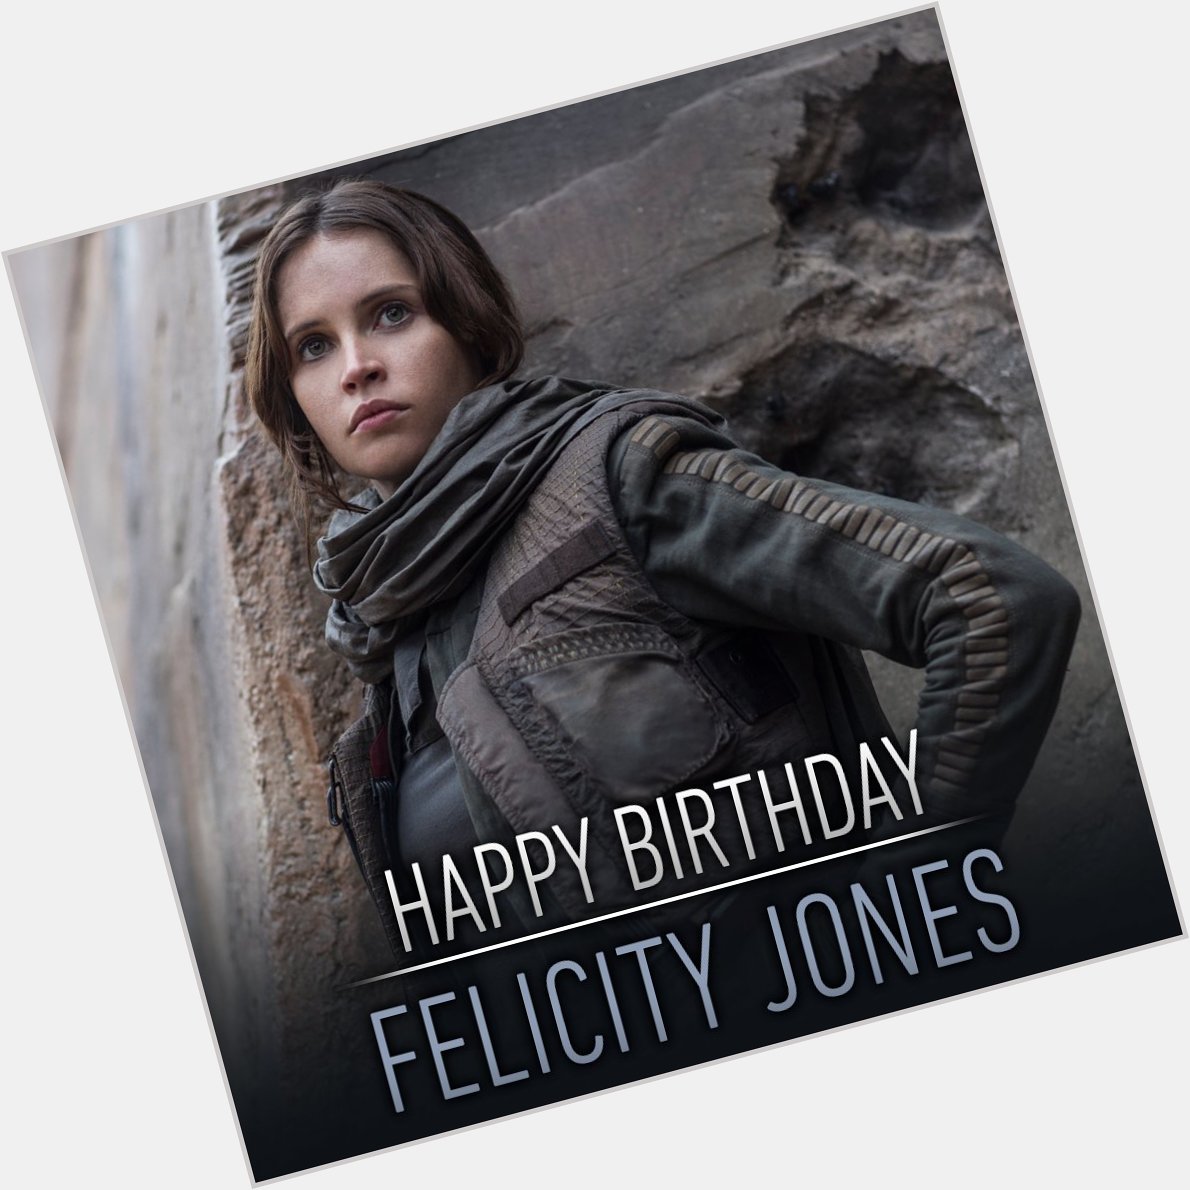 Happy Birthday an Felicity Jones, die furchtlose Rebellin in Wir wünschen alles Gute! 